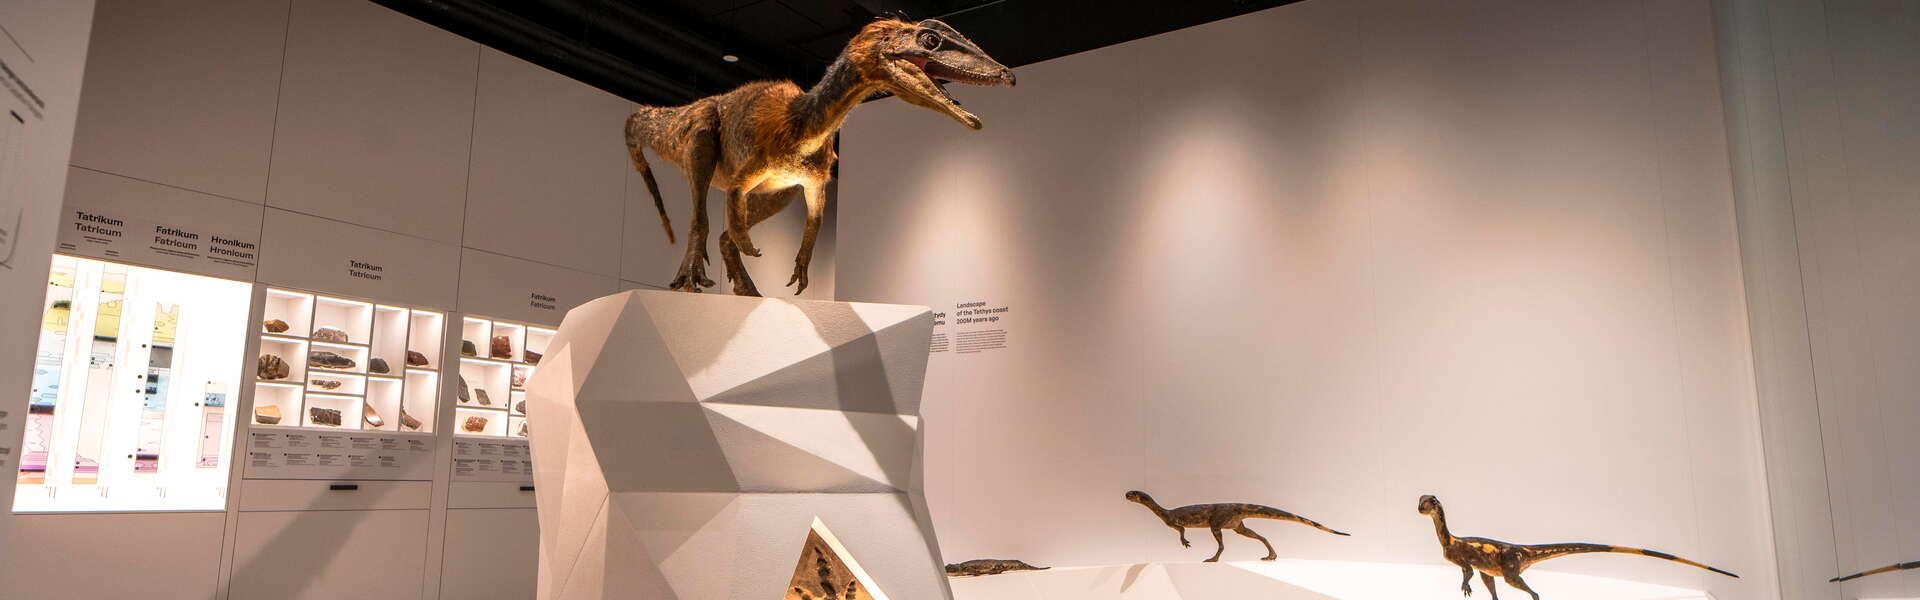 Rzeźba dinozaura postawiona na podwyższeniu. Po prawej mniejsze dinozaura. Na ścianie po lewej na pólkach ułożone różne formy skalne.